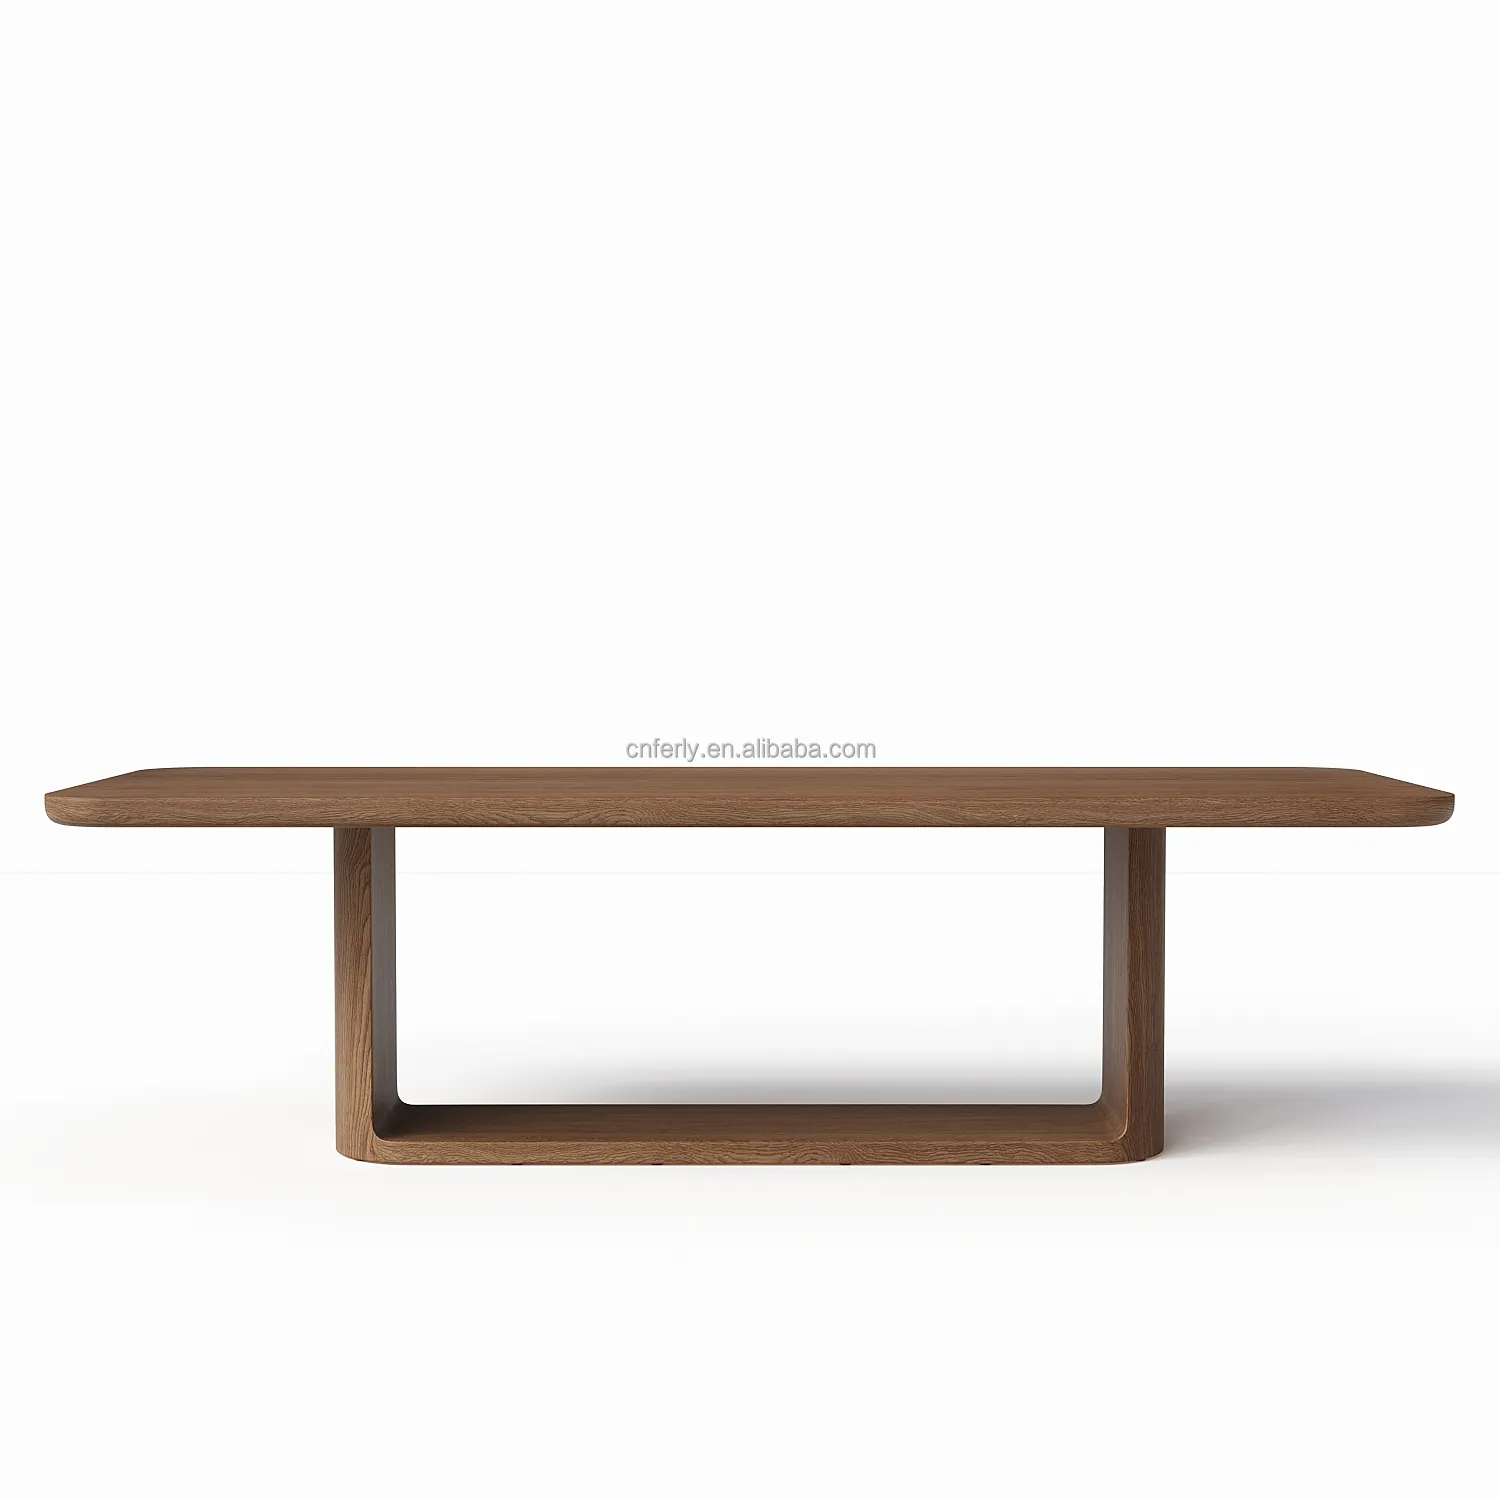 Yeni varış lüks mobilya yemek masası s dikdörtgen yemek masası seti ahşap meşe masif ahşap masa ve sandalye seti